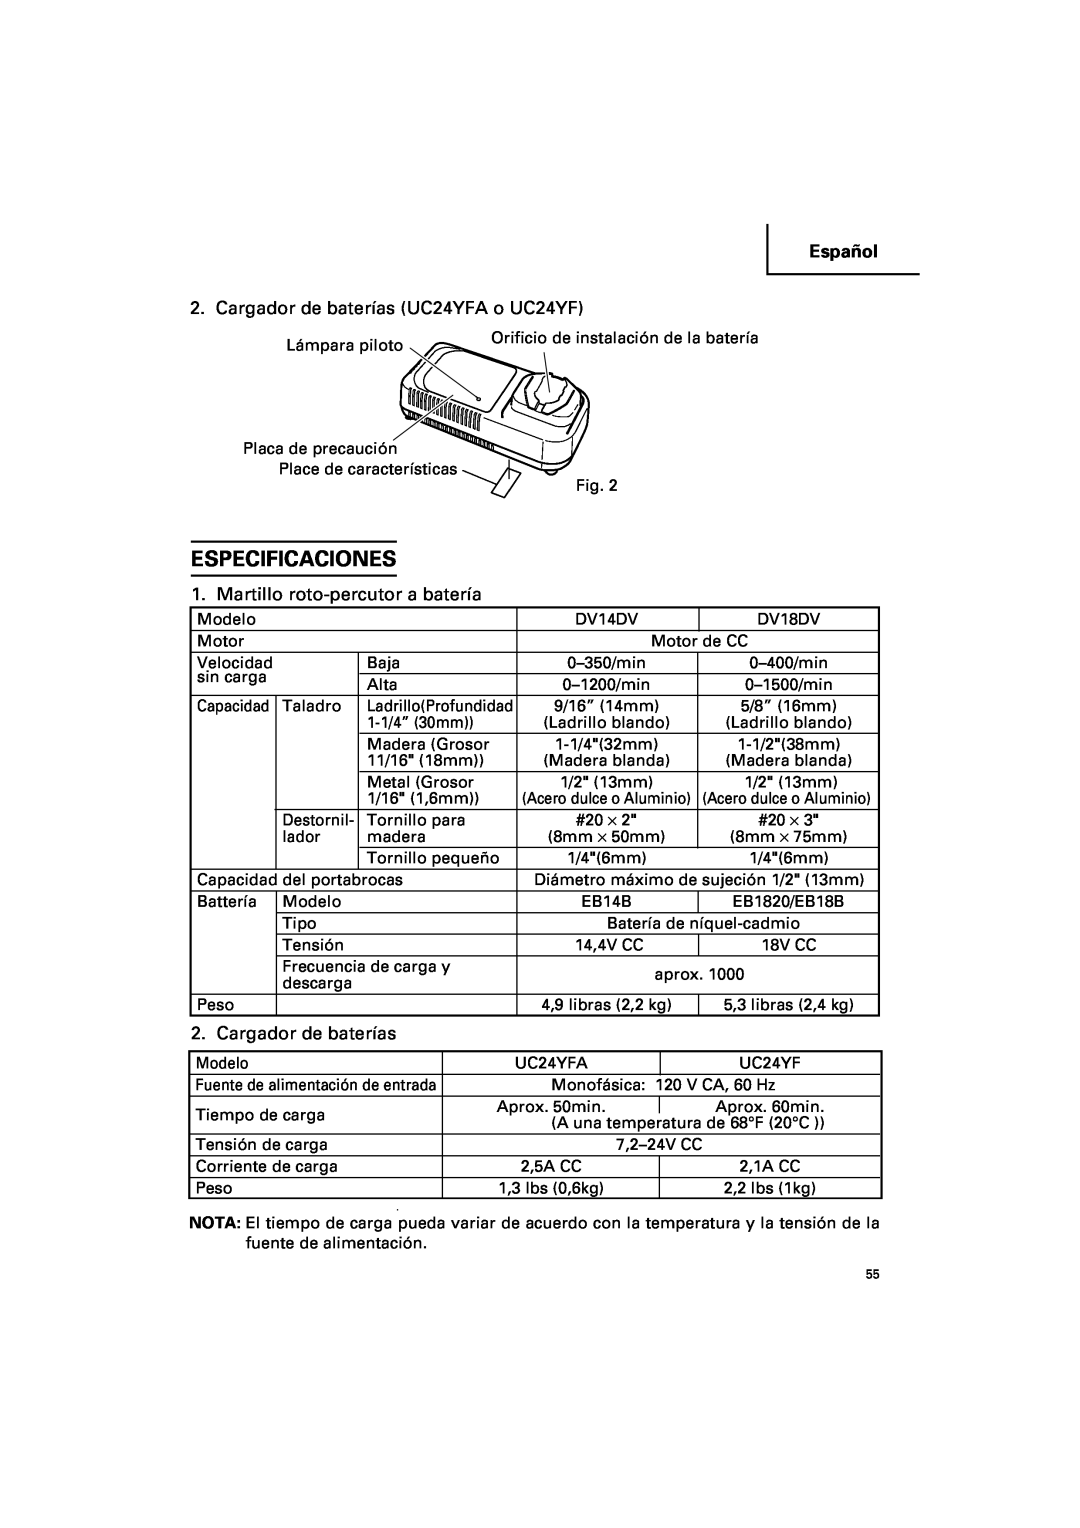 Hitachi DV 14DV Especificaciones, Cargador de baterías UC24YFA o UC24YF, Martillo roto-percutor a batería, Español 